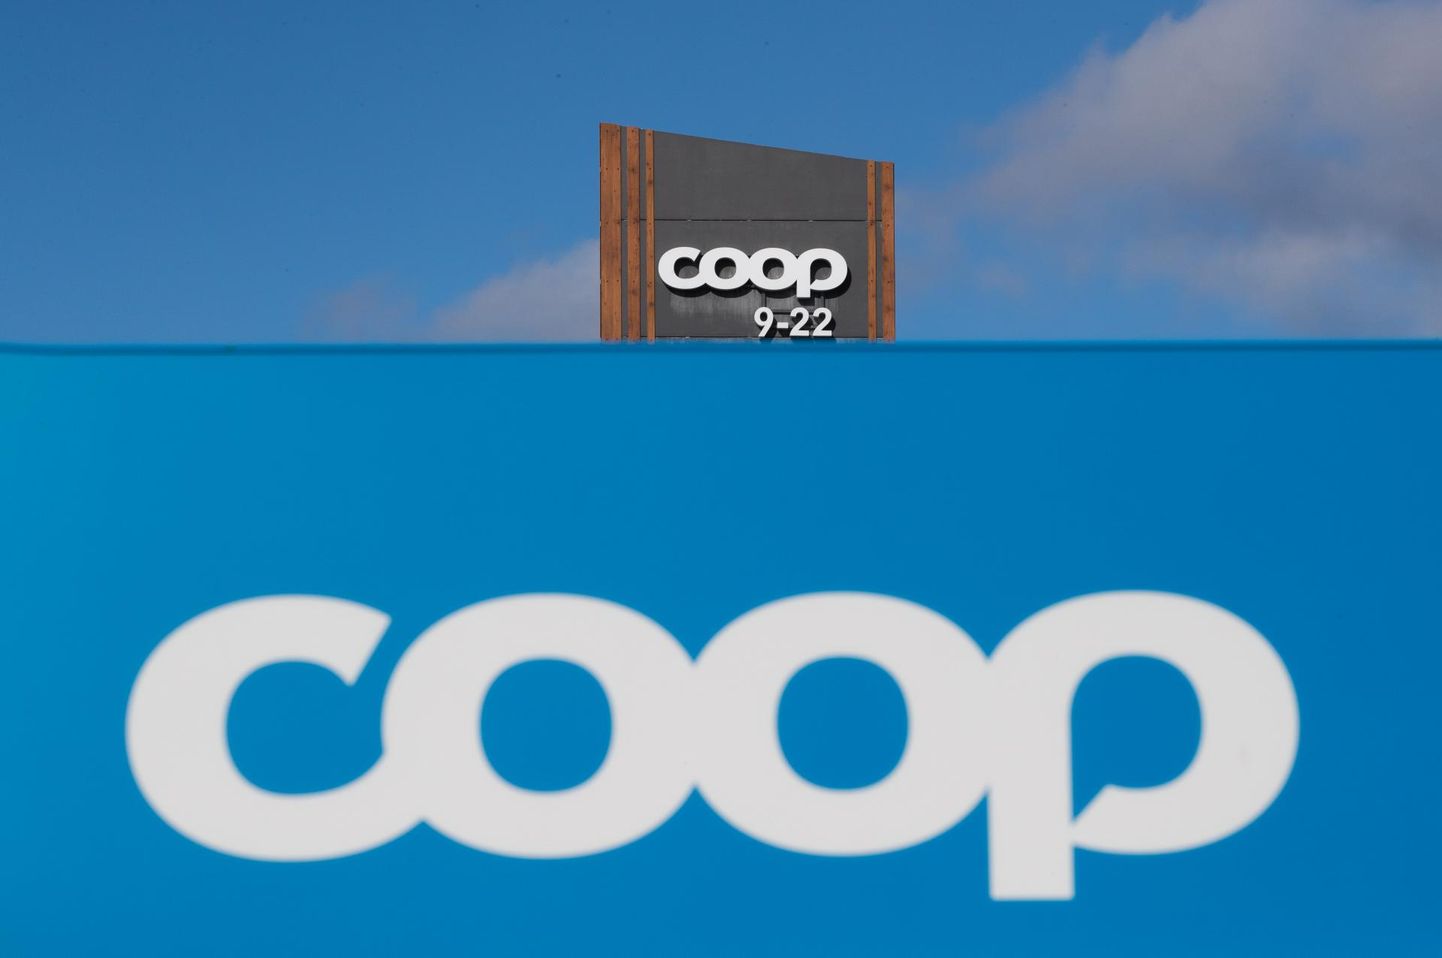 Coop hoiatab petusõnumite eest.